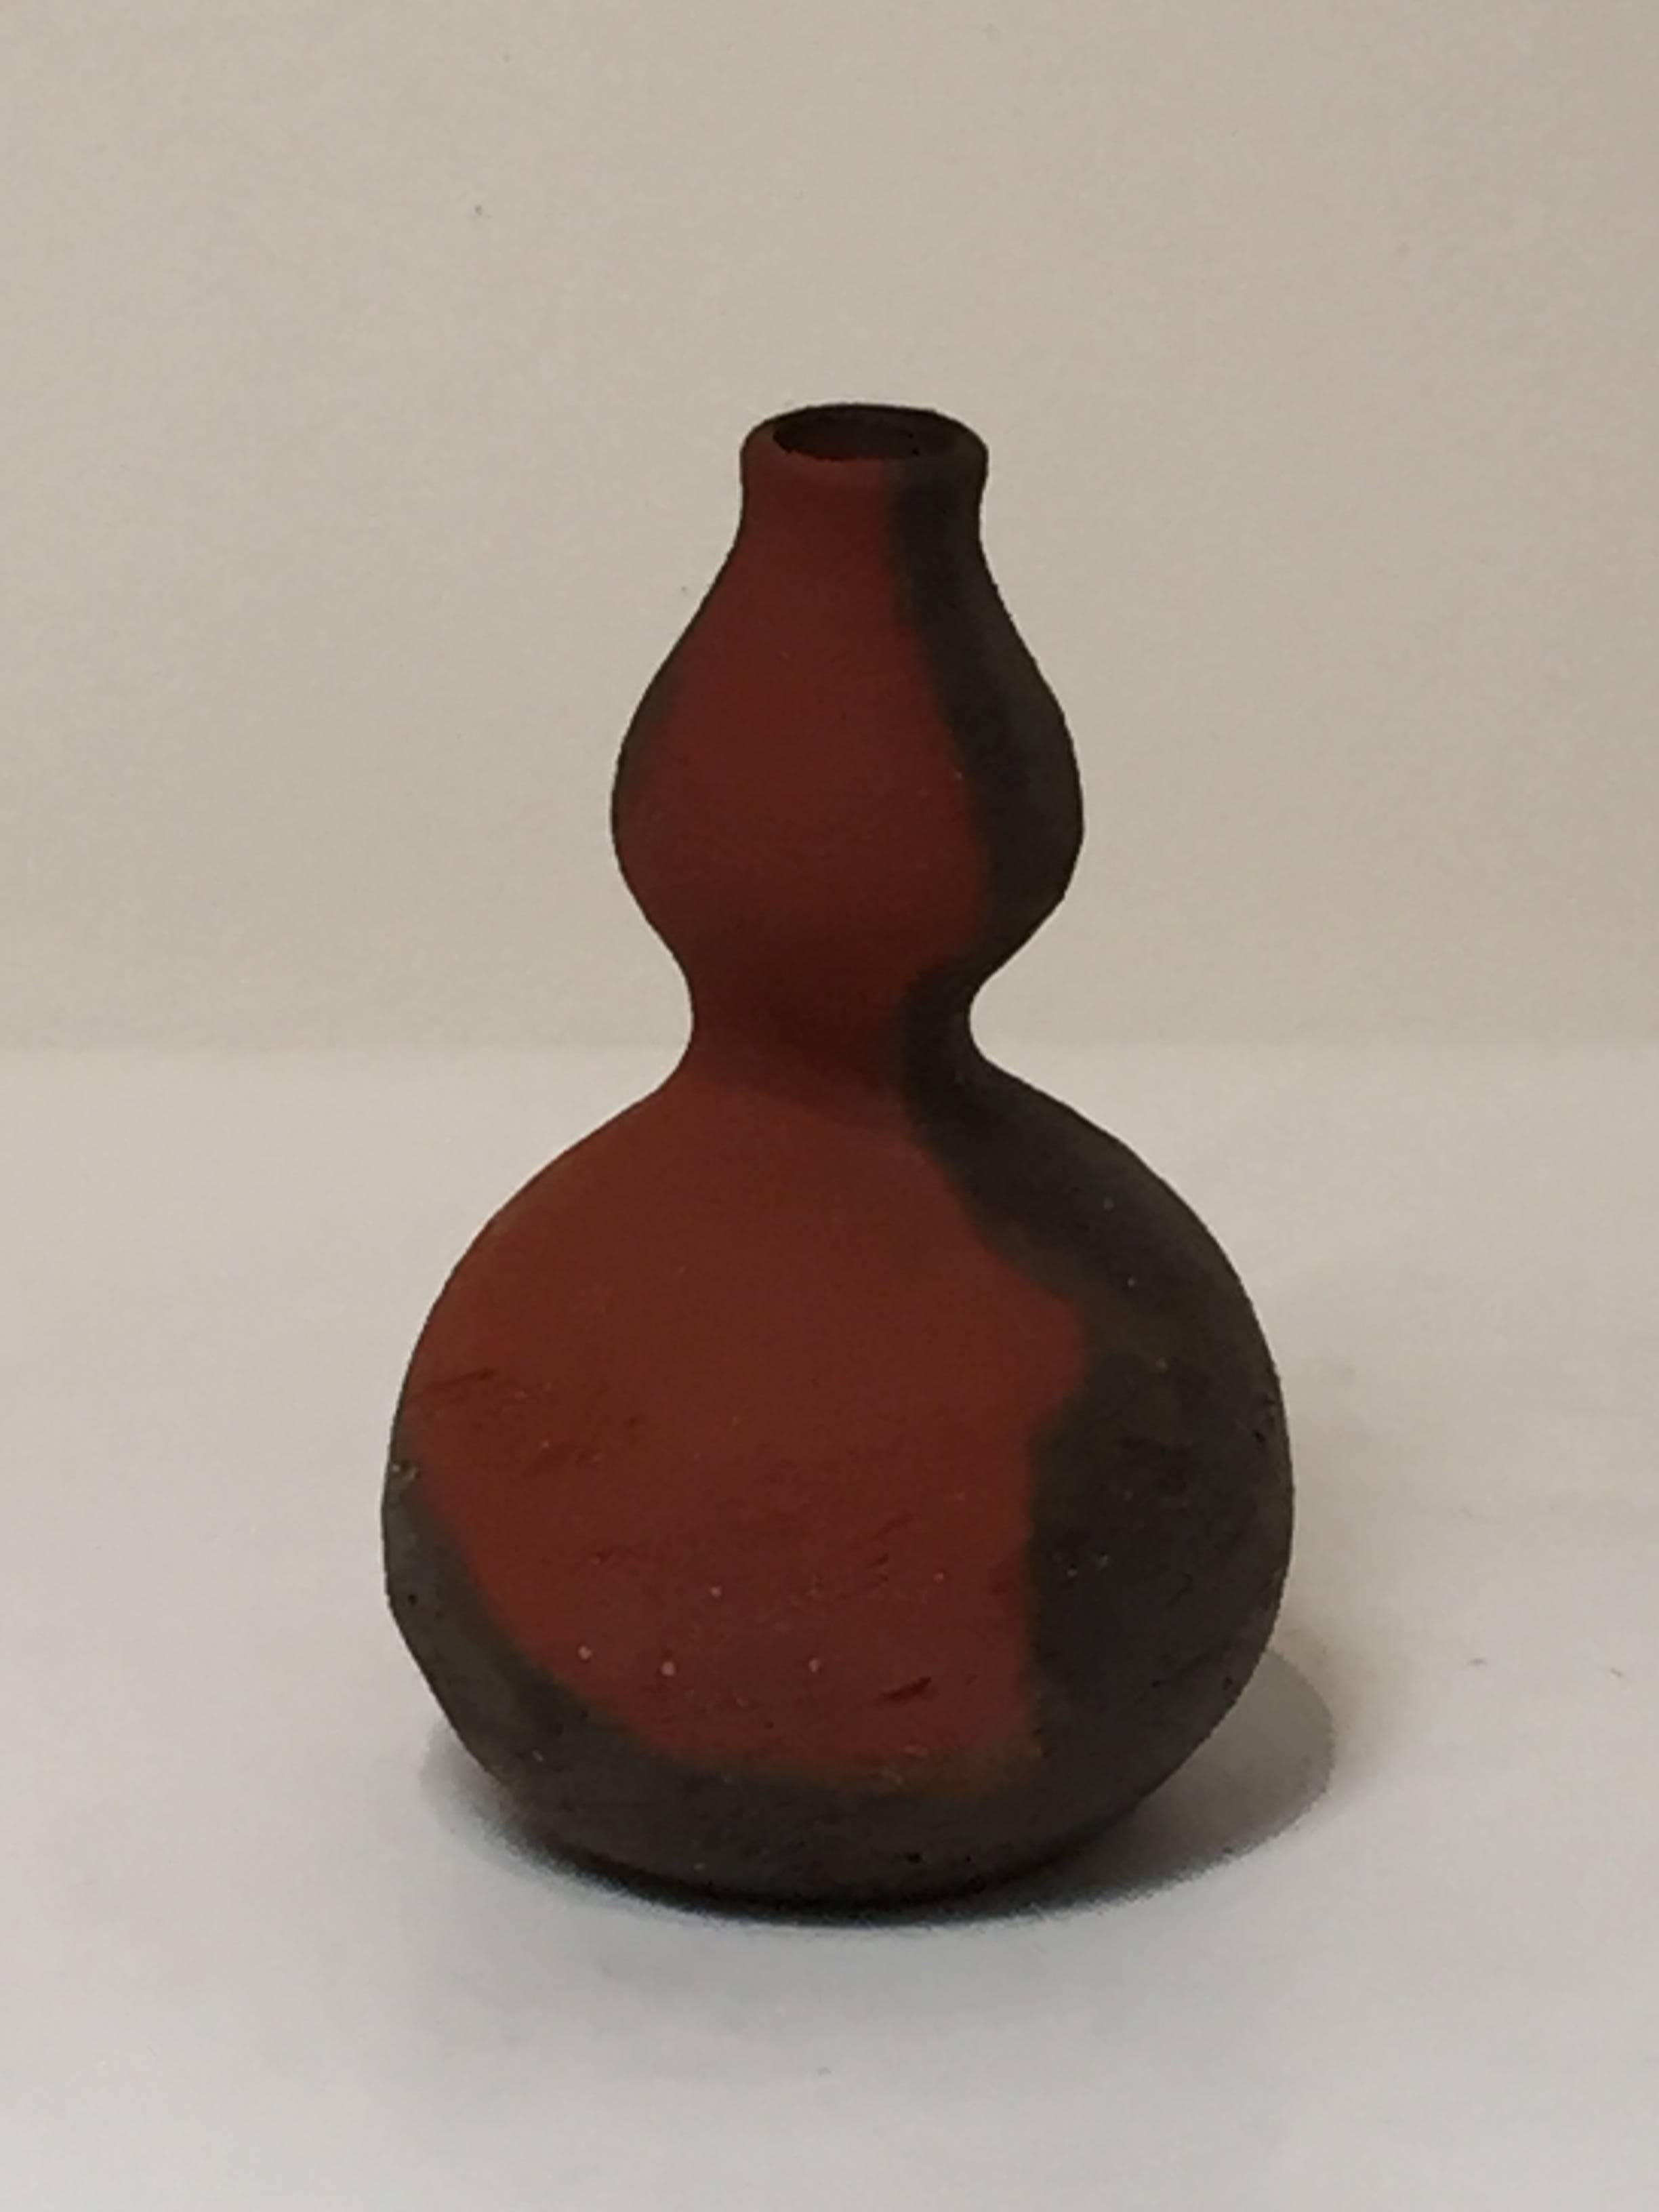 Contemporary Sake Flask by Japanese Potter Osawa Tsuneo 1